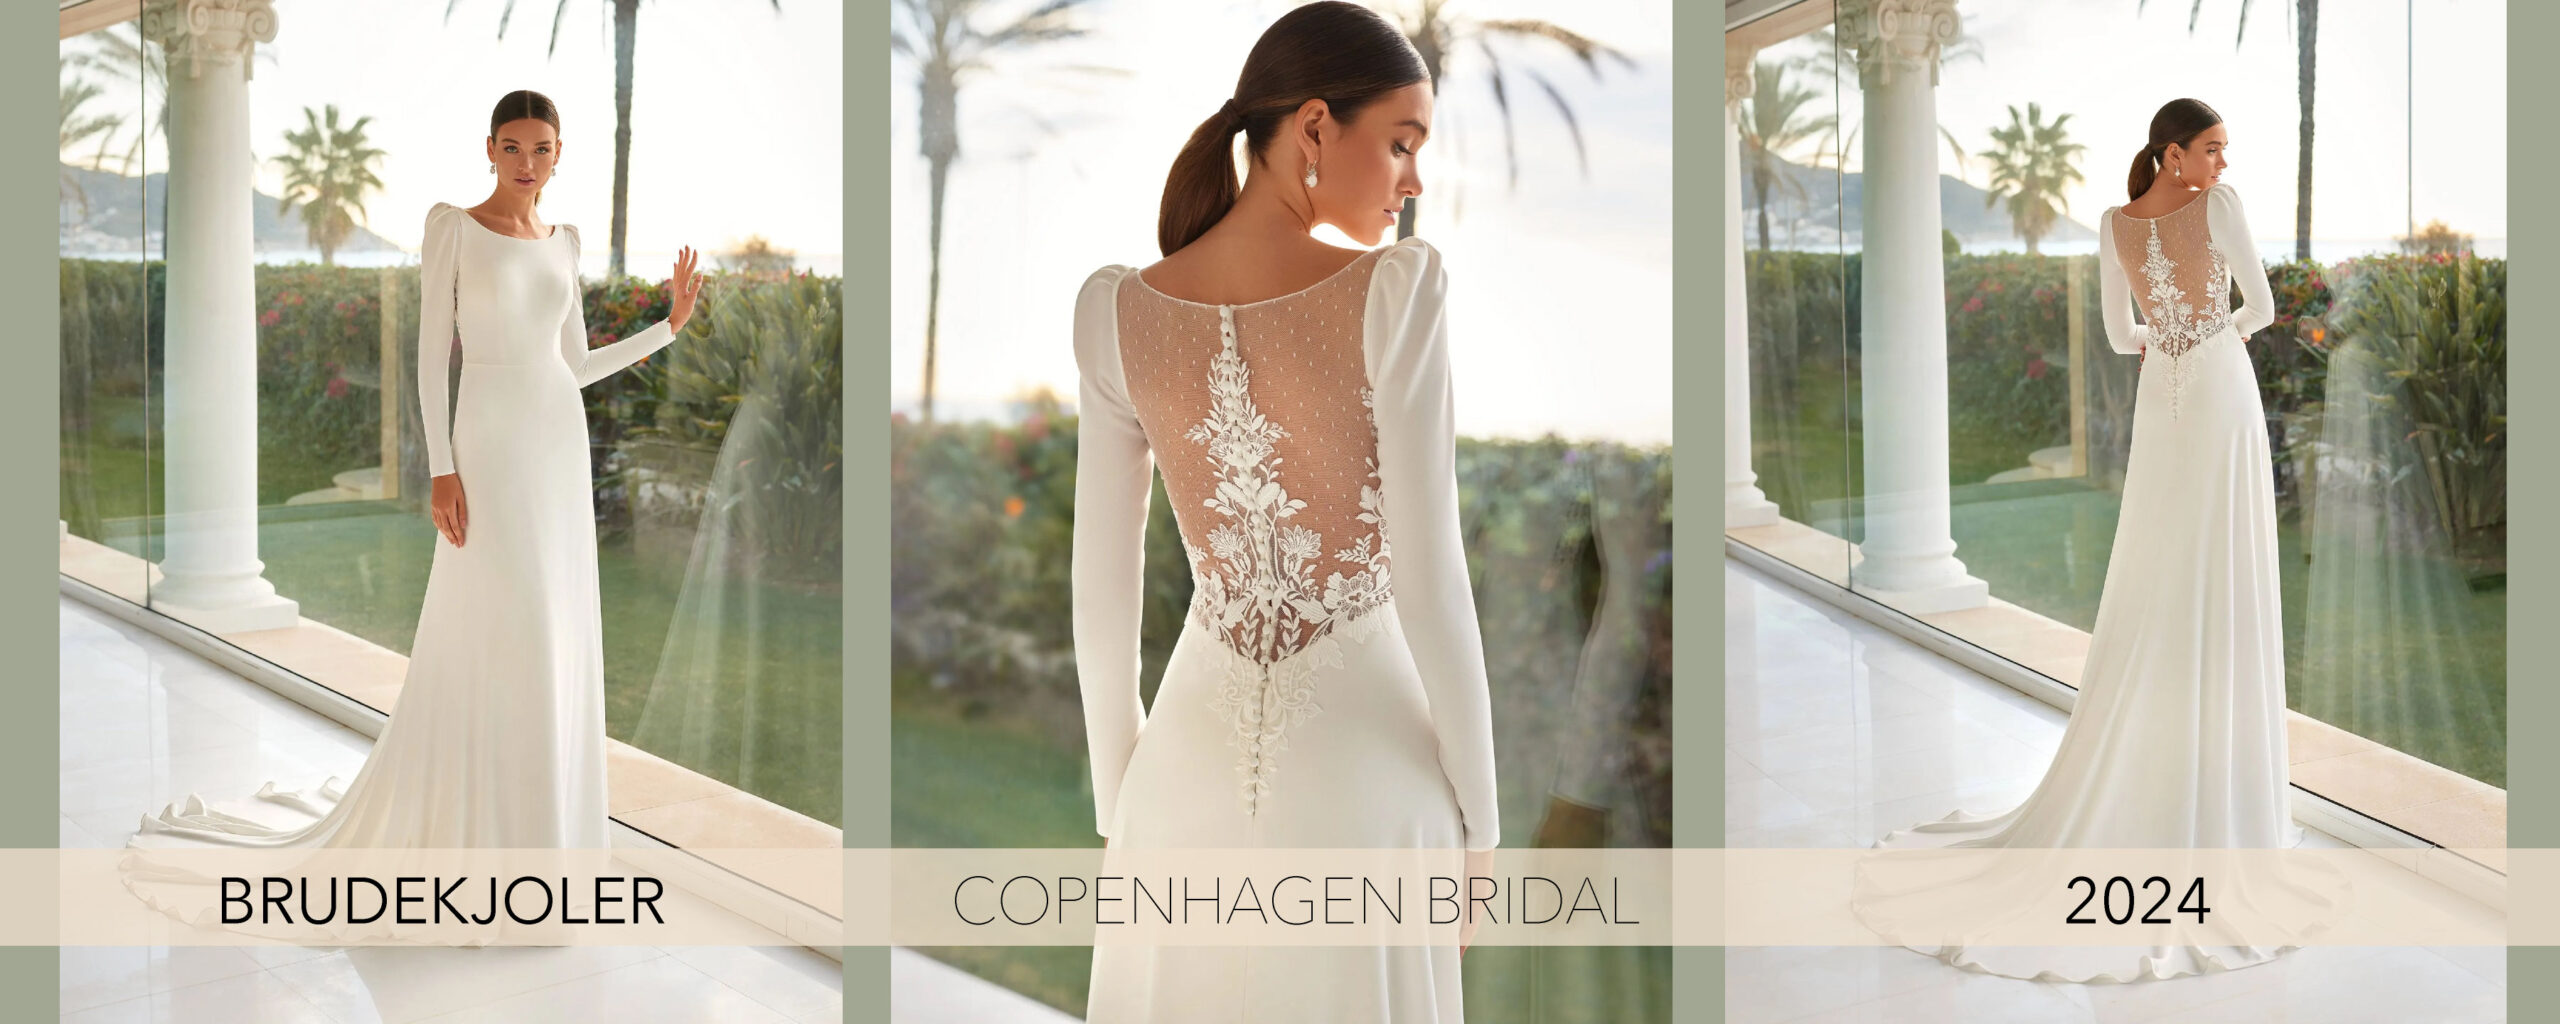 Brudekjoler i hjertet af København. Se den ny brudekjole 2024 kollektion.